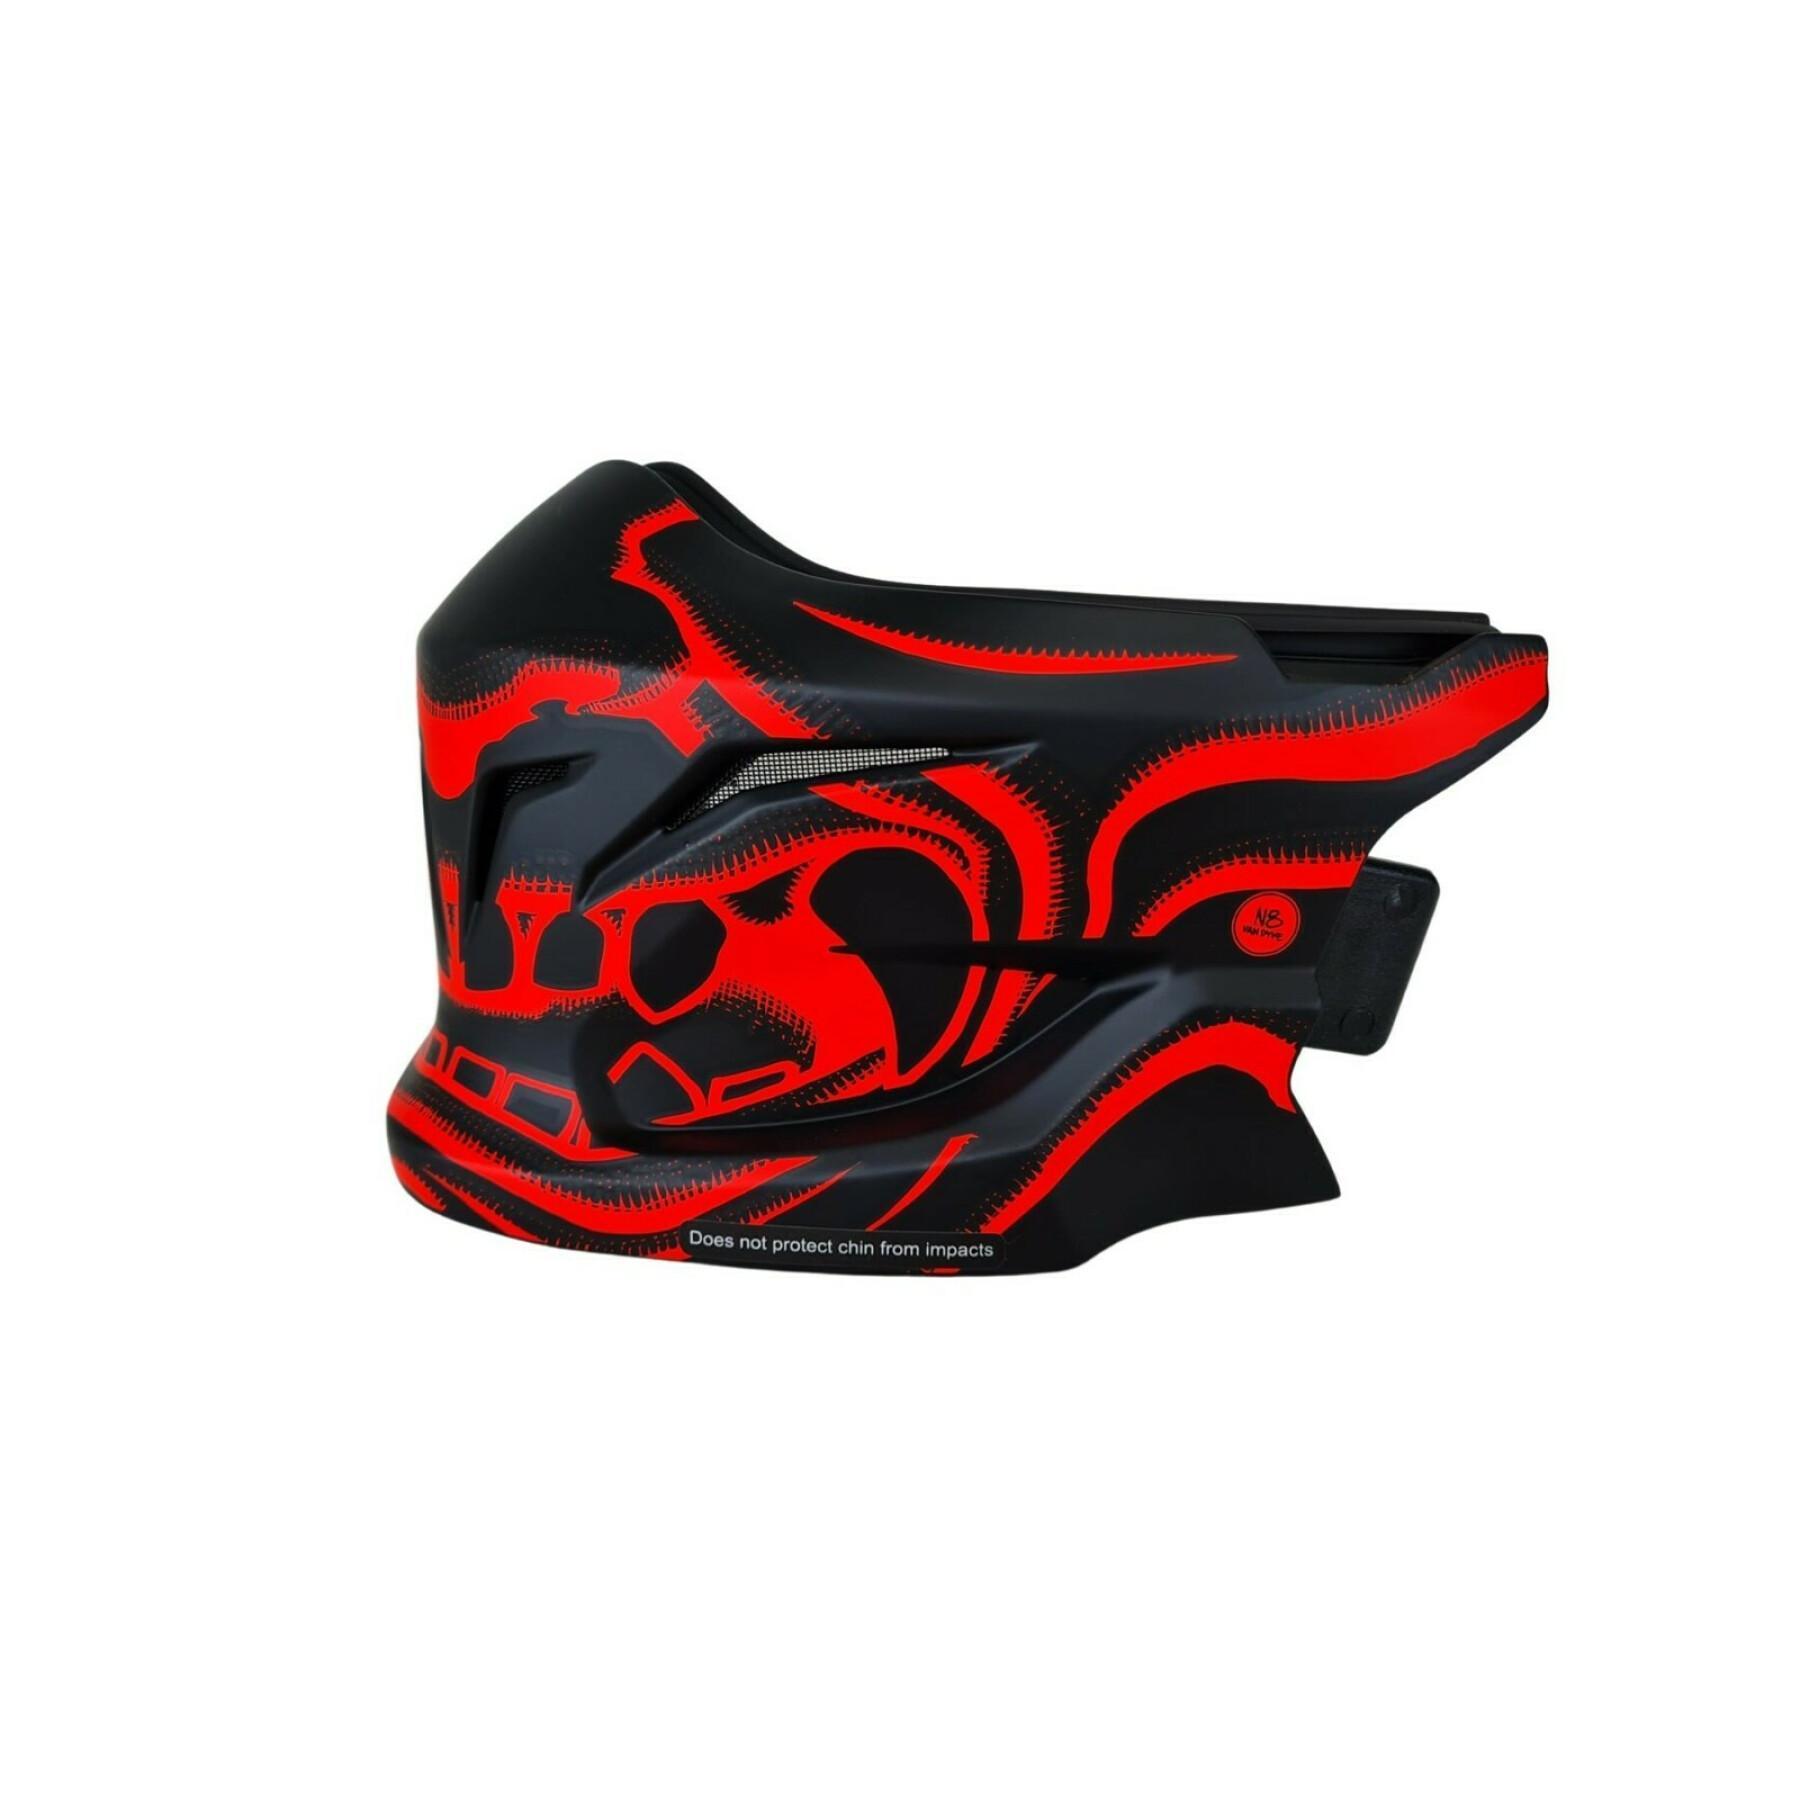 Maschera da moto Scorpion Exo-Combat evo mask SAMURAI